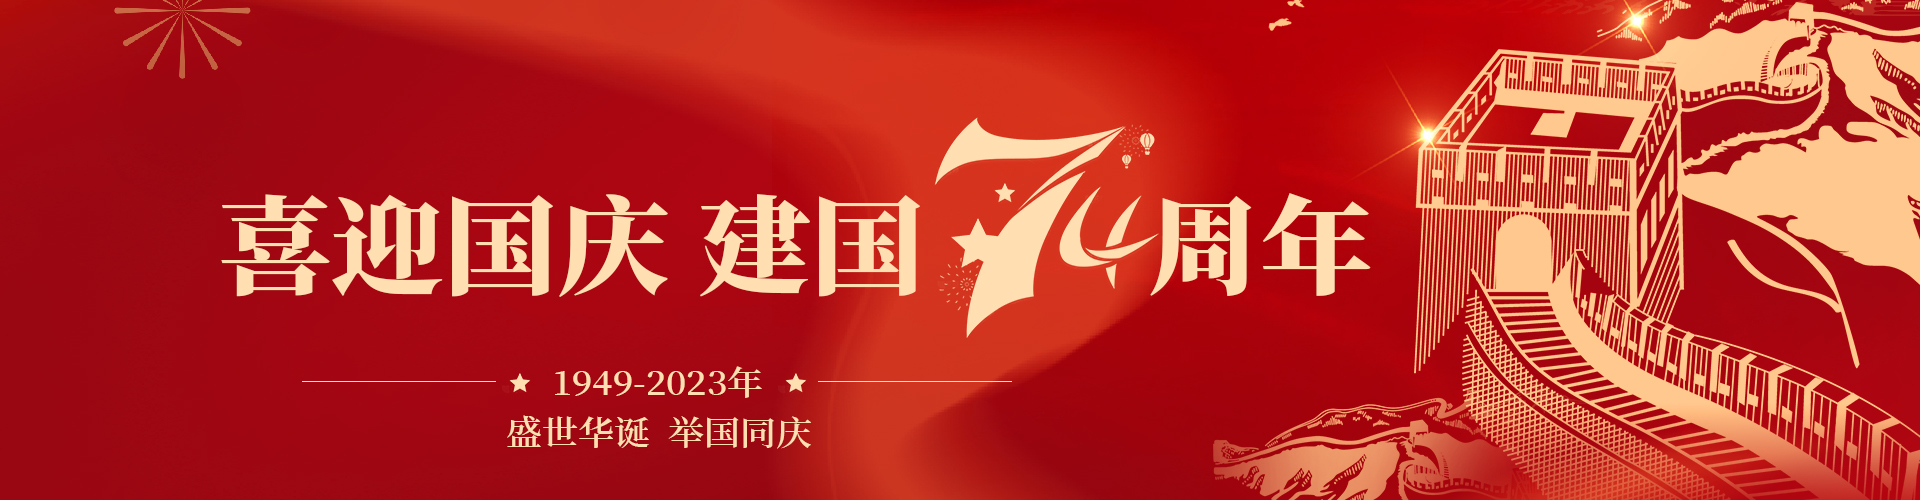 國慶節banner